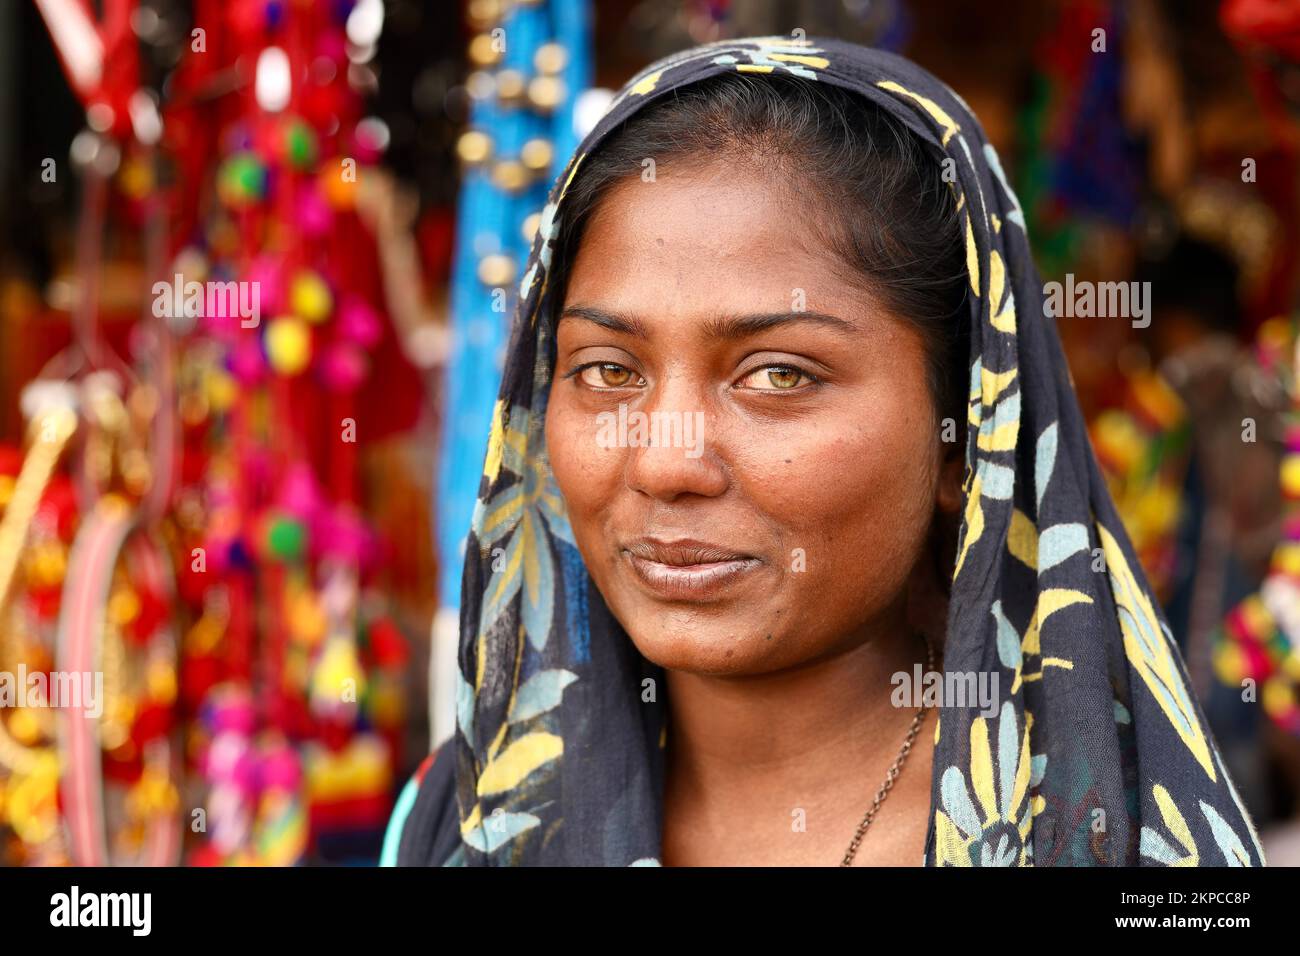 Ein Porträt eines lächelnden indischen Kalbelia-Stammesjungen Mädchens mit grünen und gelben Augen Stockfoto